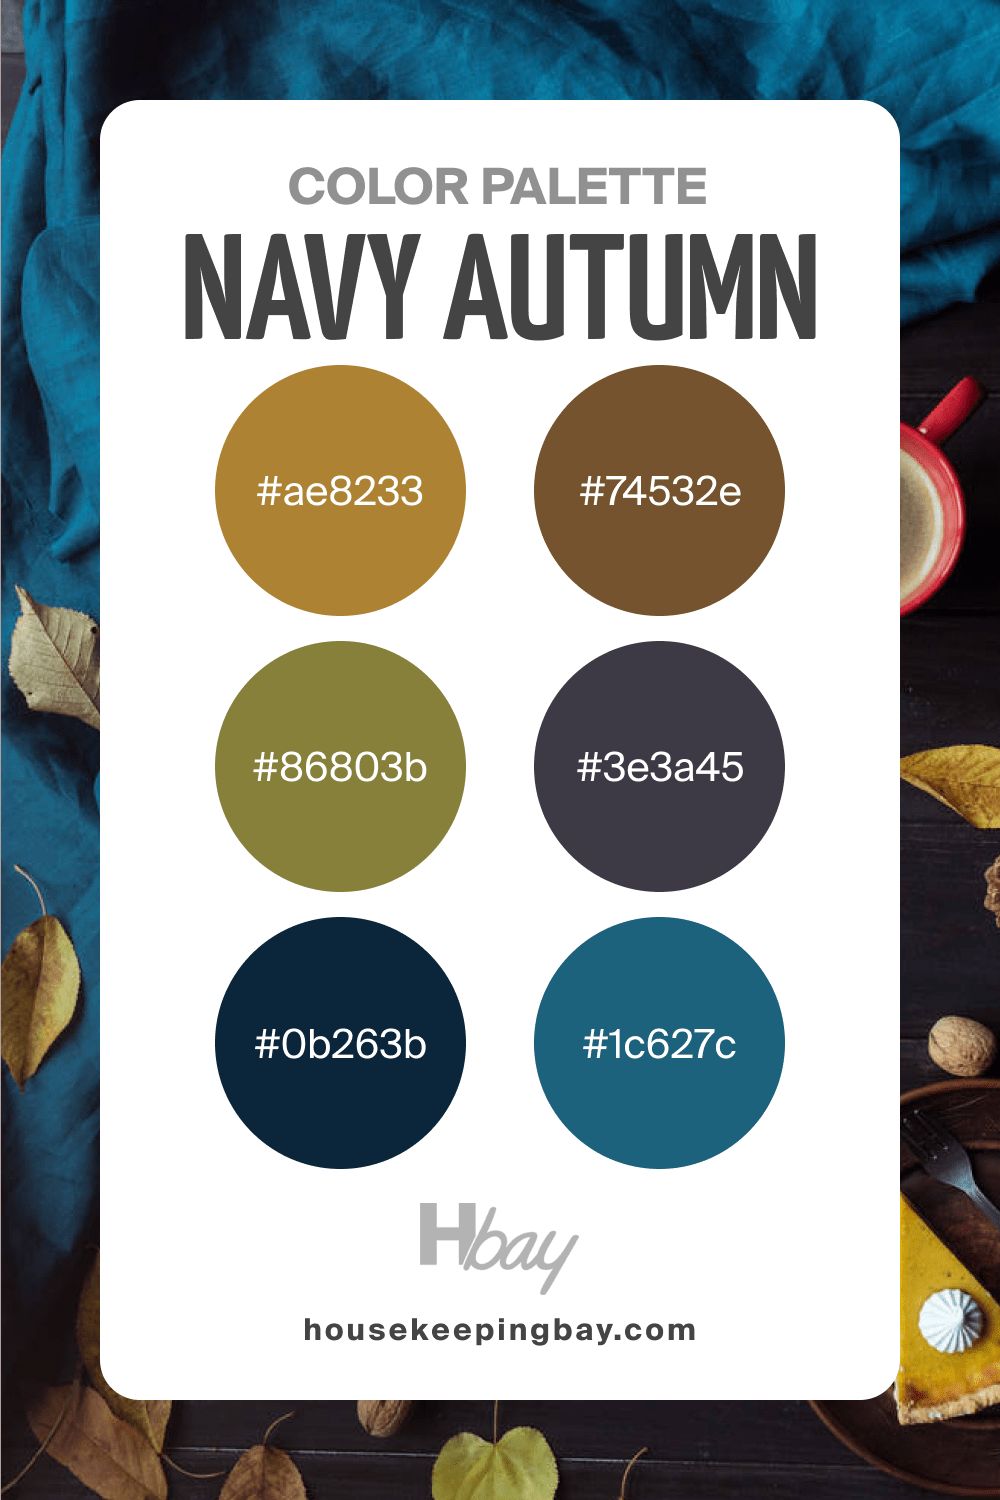 Autumn color palette navy